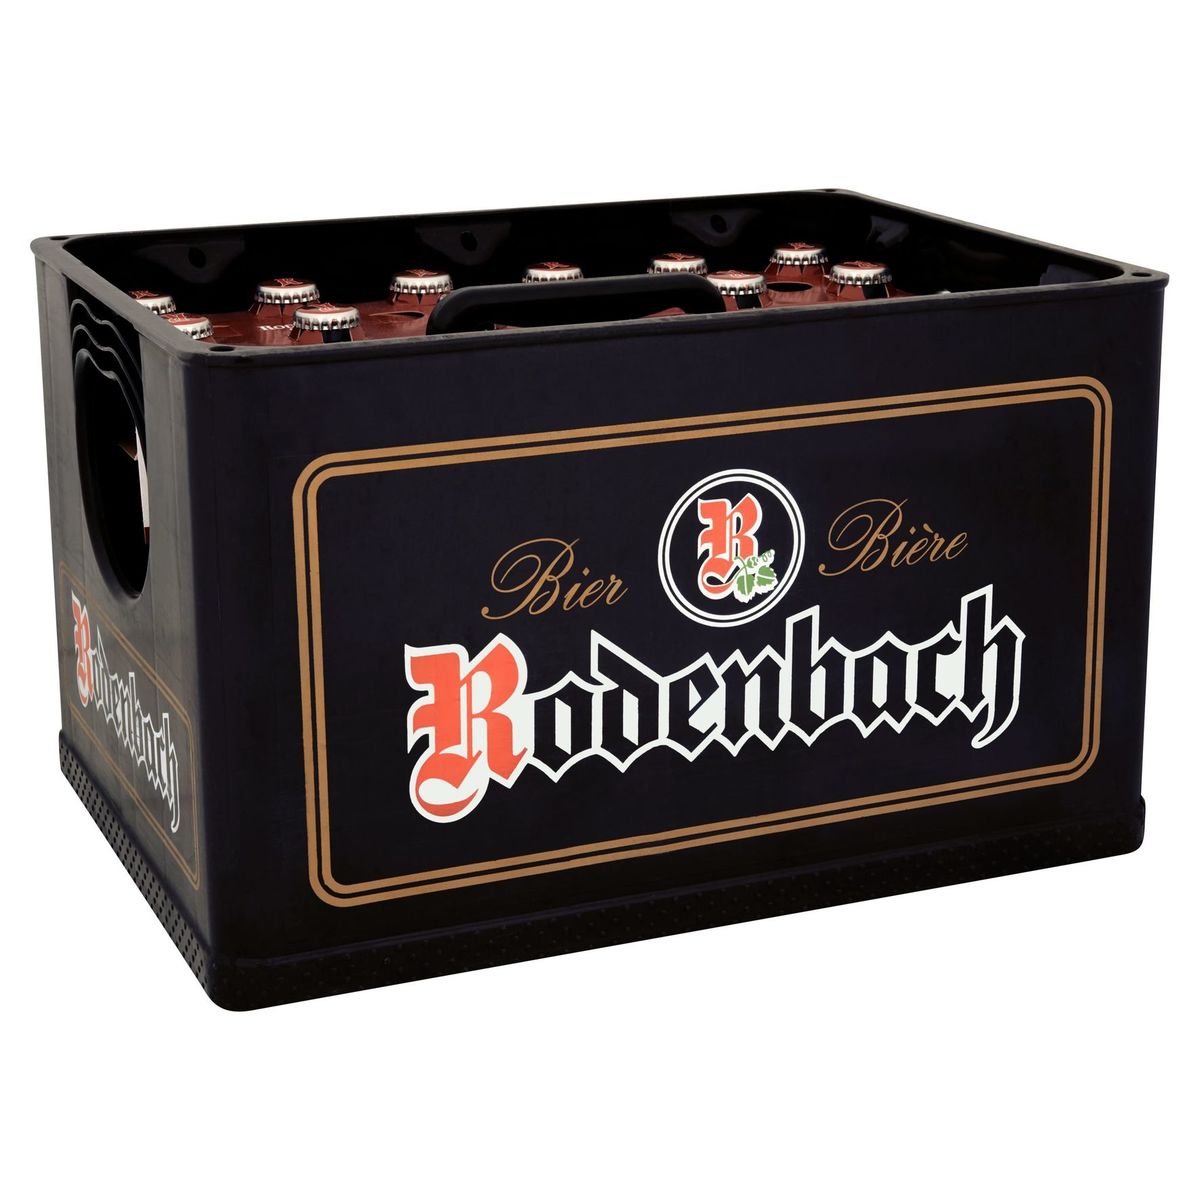 Rodenbach Classic Bière Caisse 4 x (6 x 25 cl)